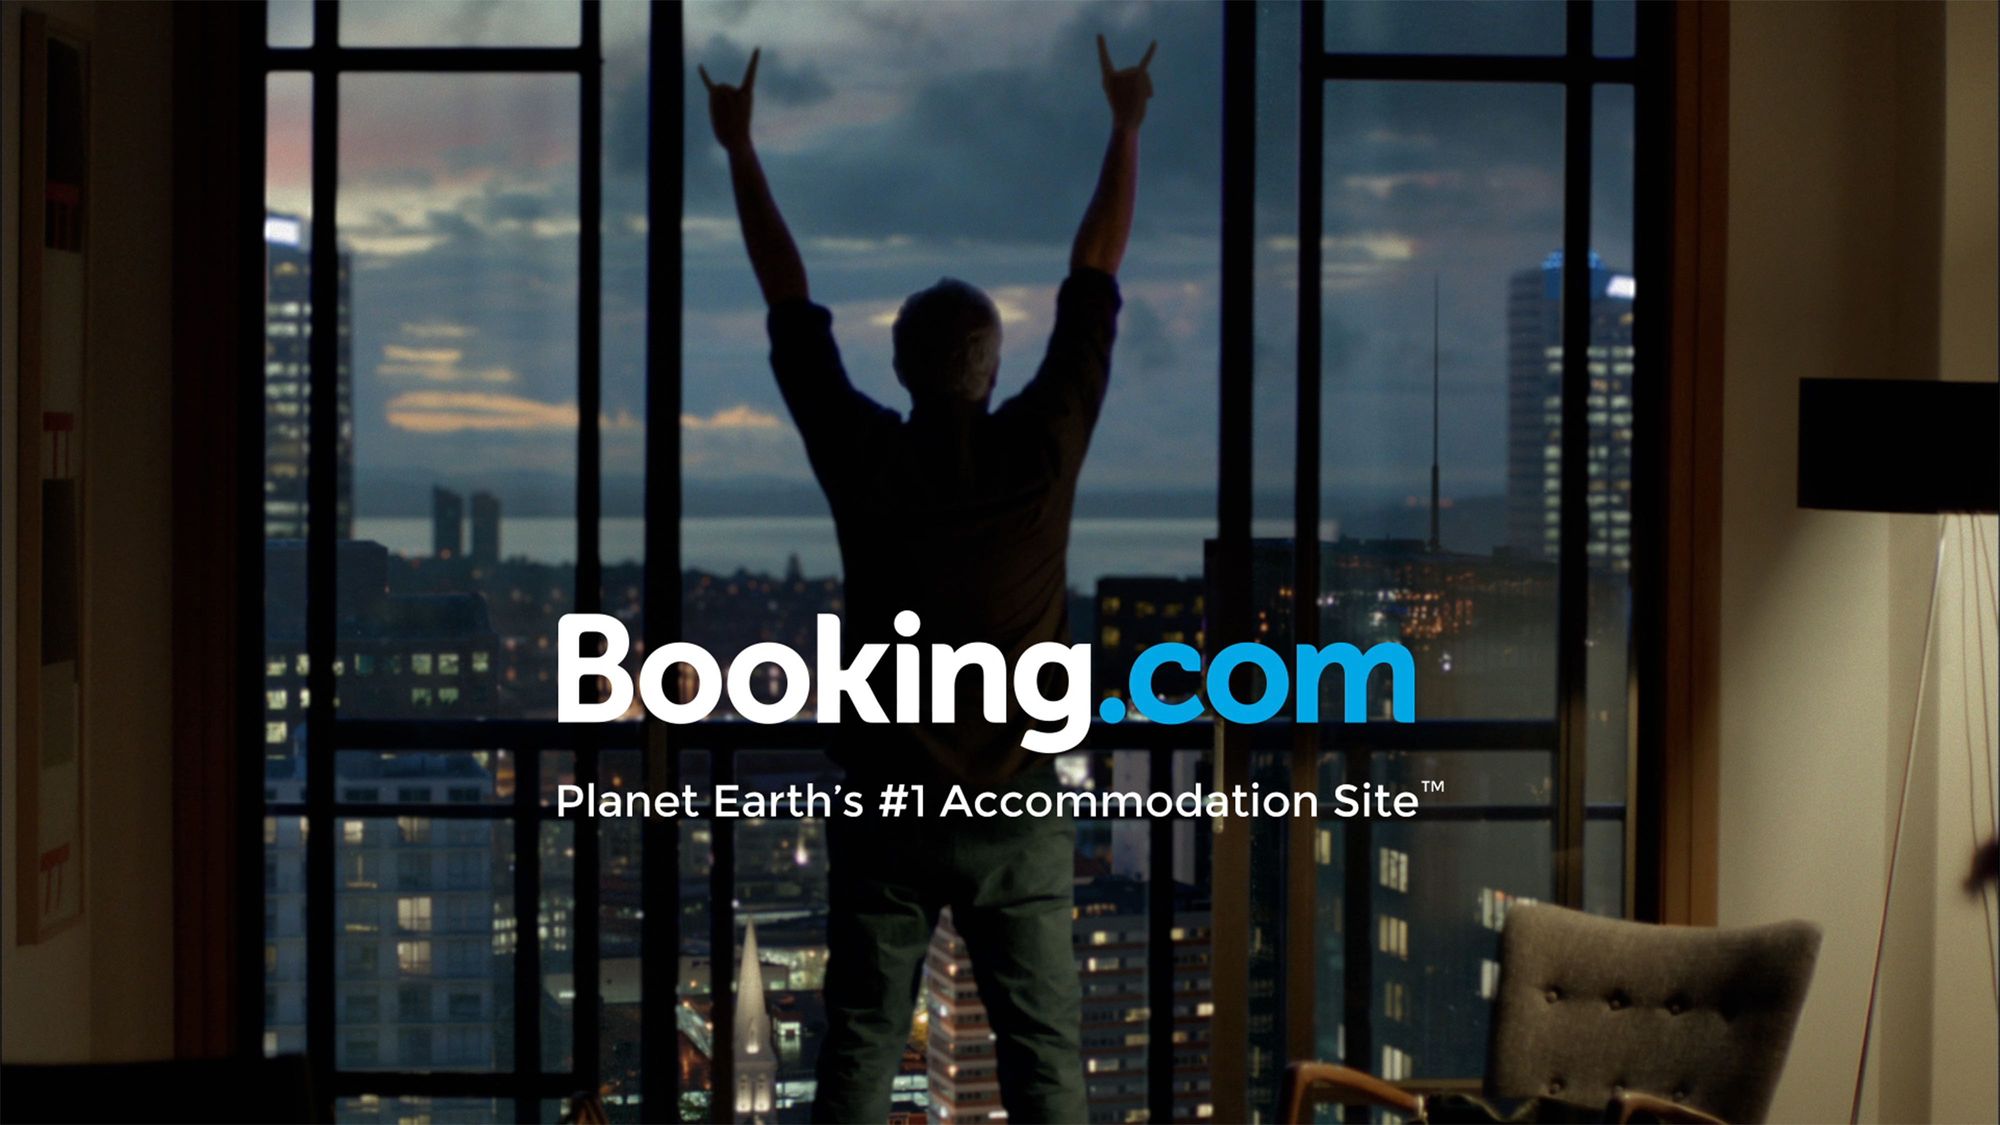 Phân tích UX và thiết kế lại trang Booking.com (kì 1)